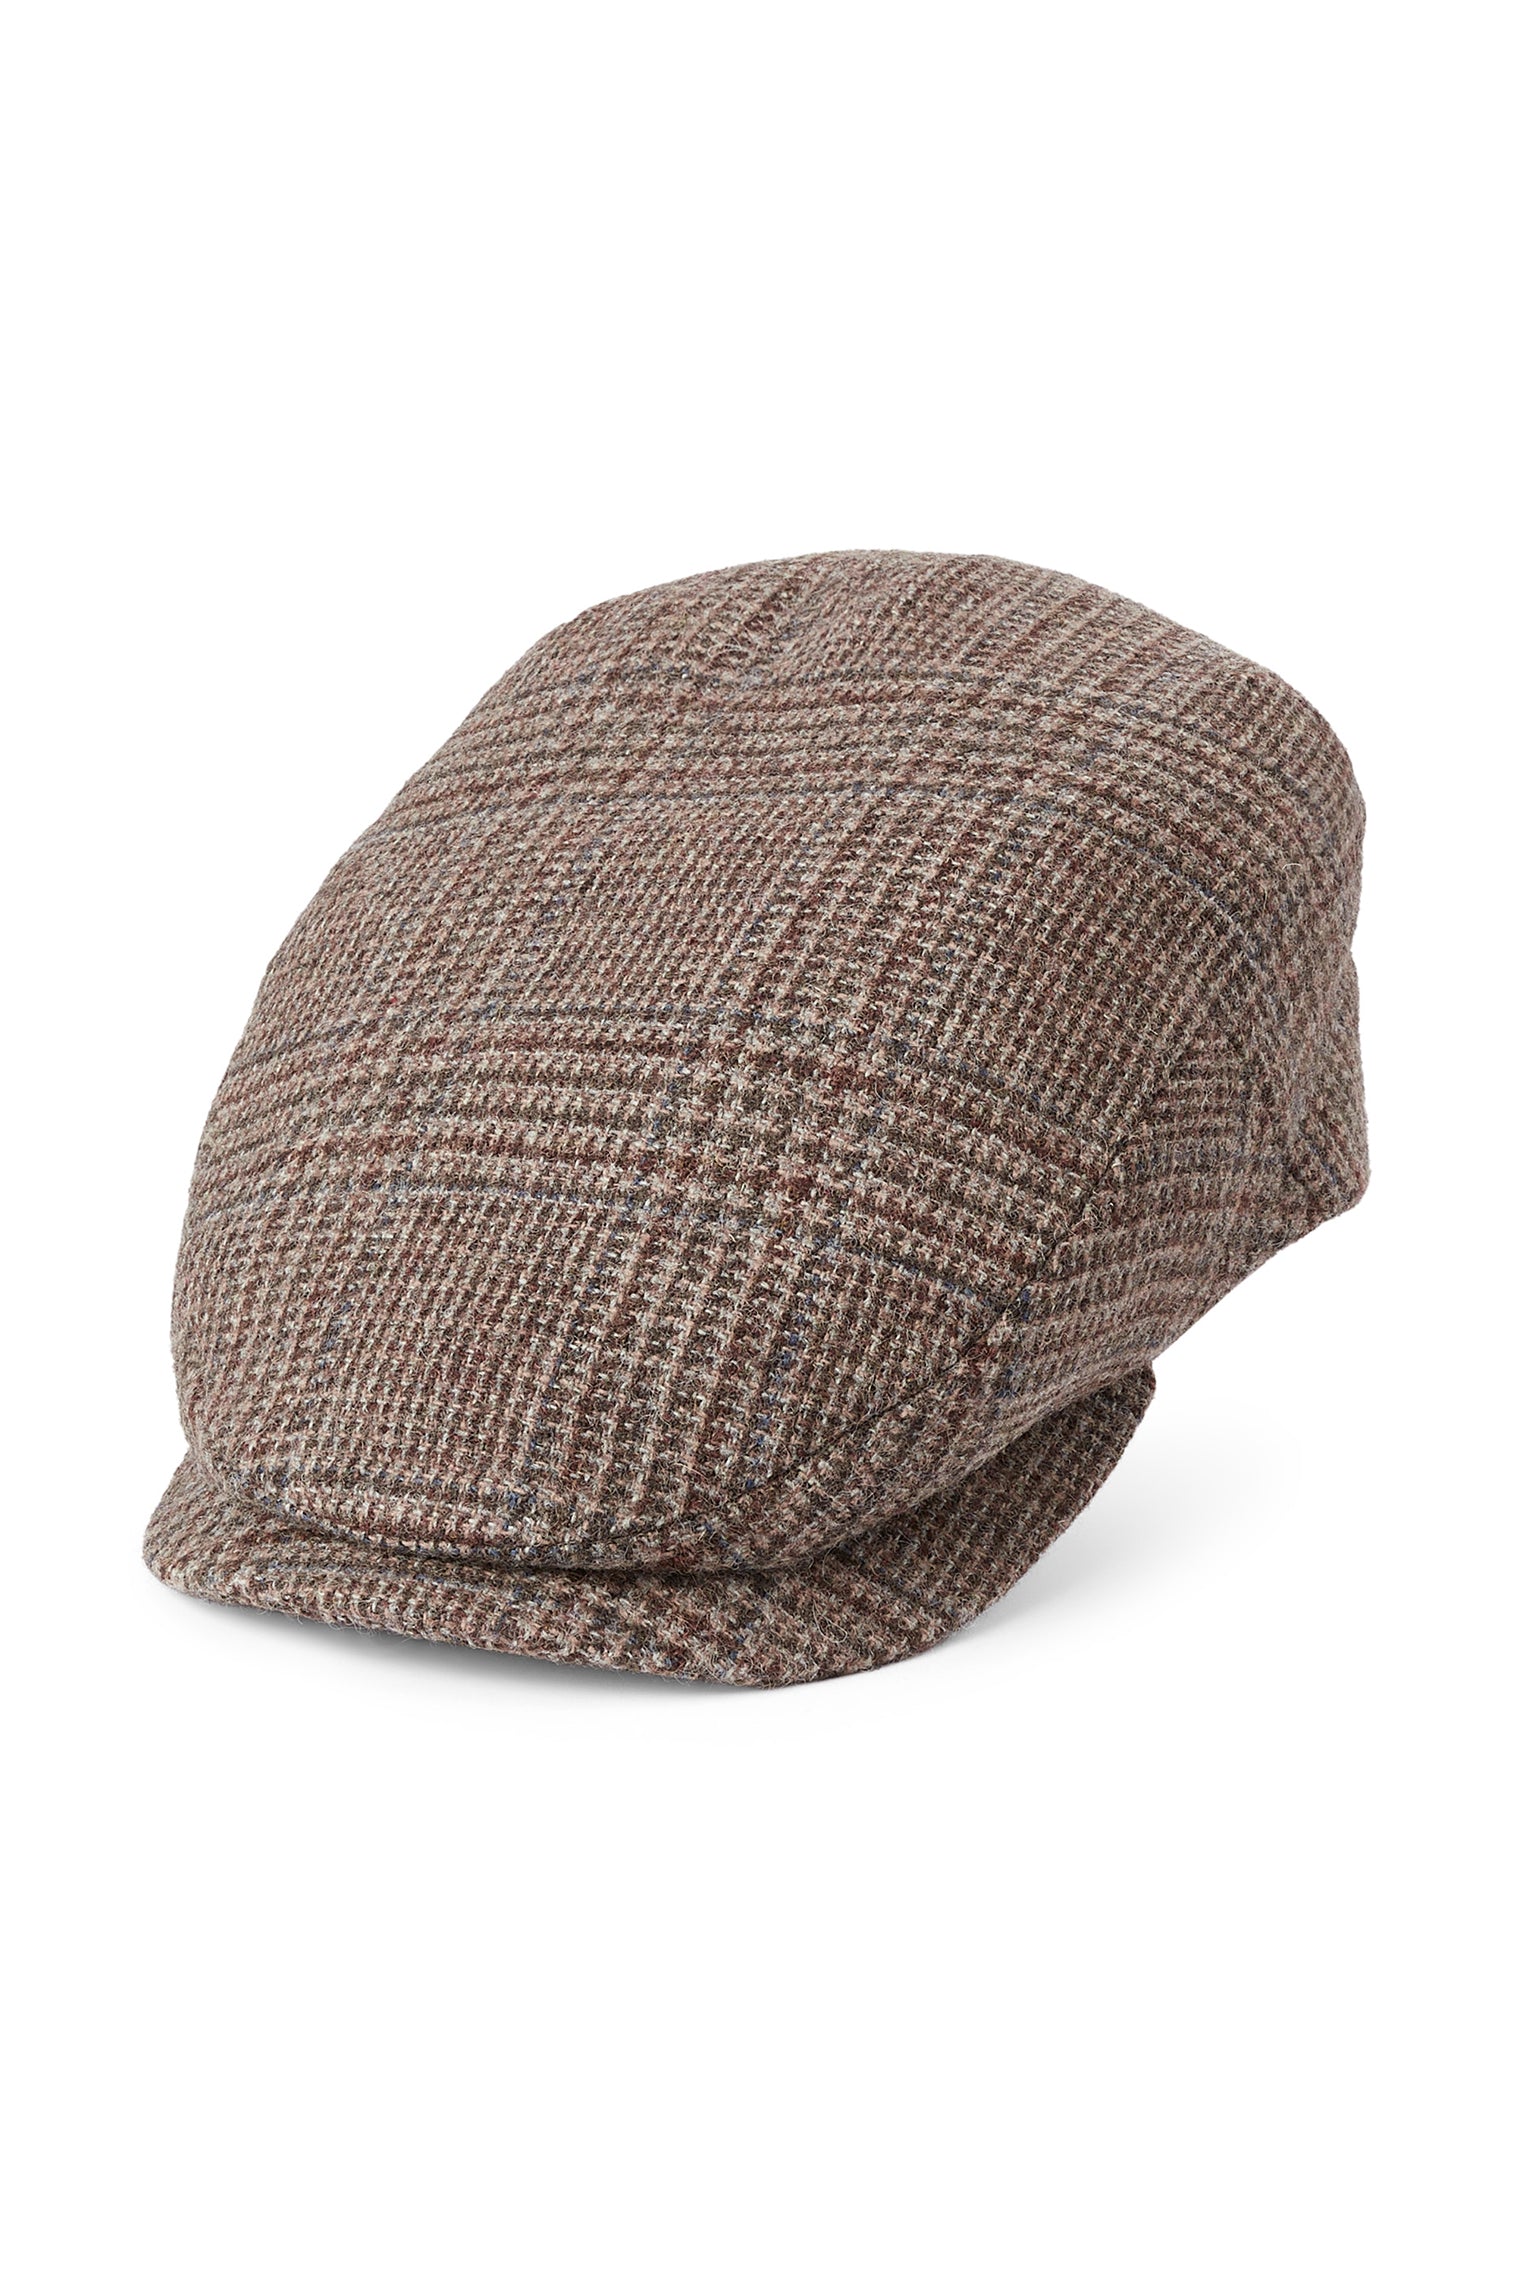 Drifter Glen Check Flat Cap - New Season Men's Hats - Lock & Co. Hatters London UK